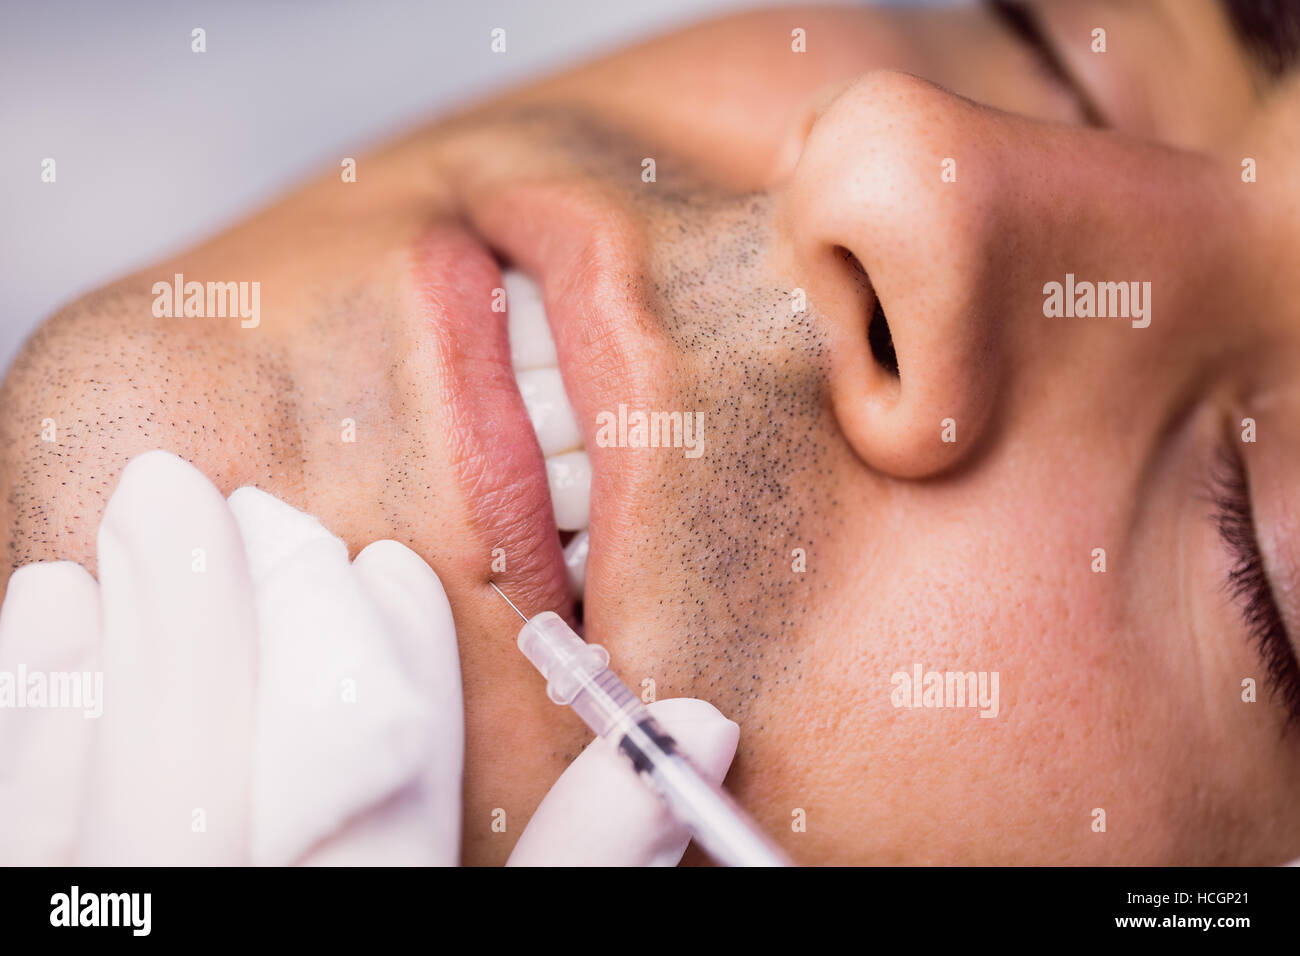 Man receiving botox injection sur ses lèvres Banque D'Images